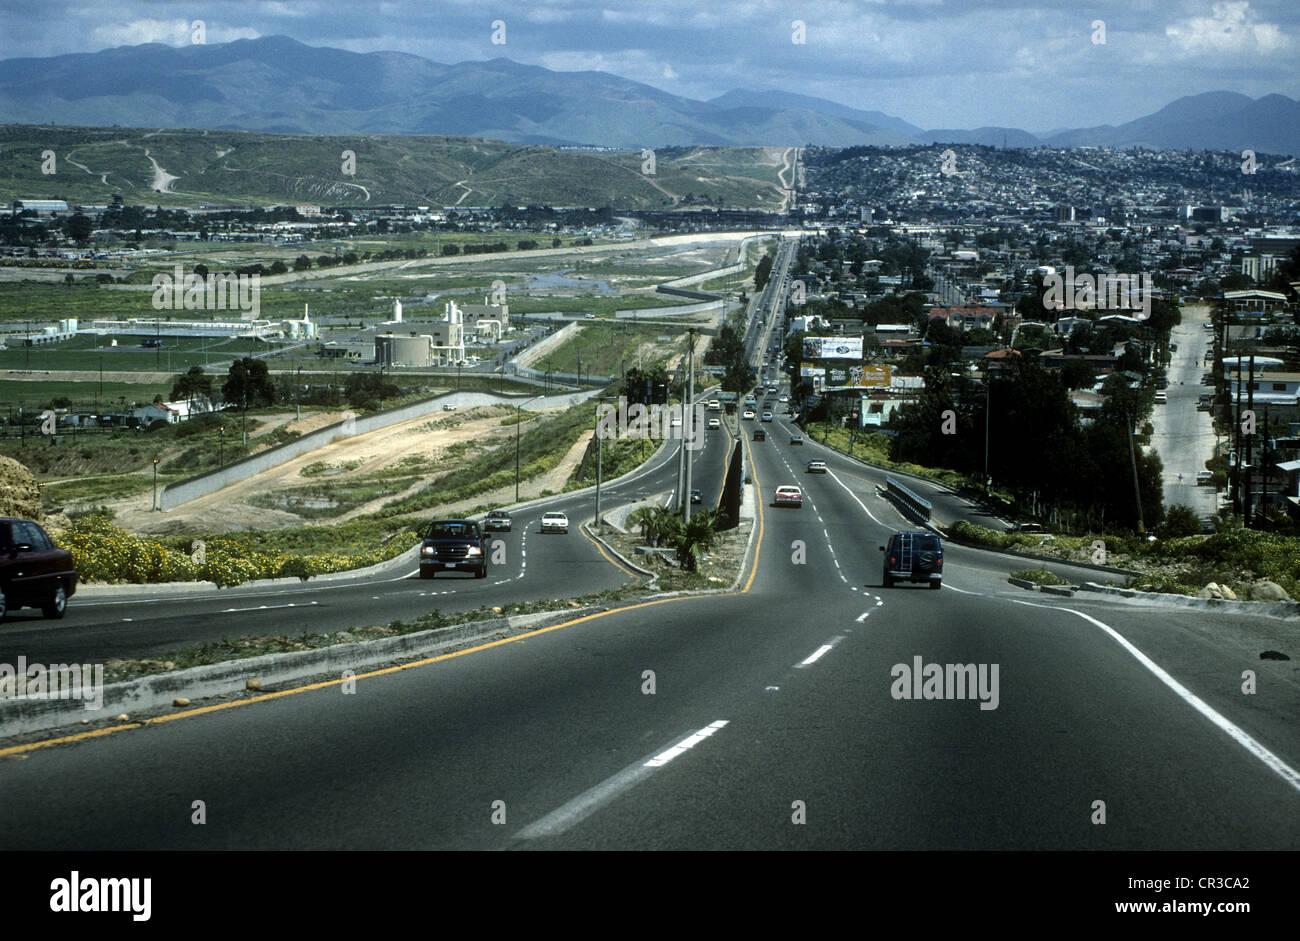 Zweispurige Straße in der Nähe von Tijuana, die parallel zur mexikanischen Grenze mit den USA. Mexiko auf rechten Seite, USA auf linken Seite. Stockfoto